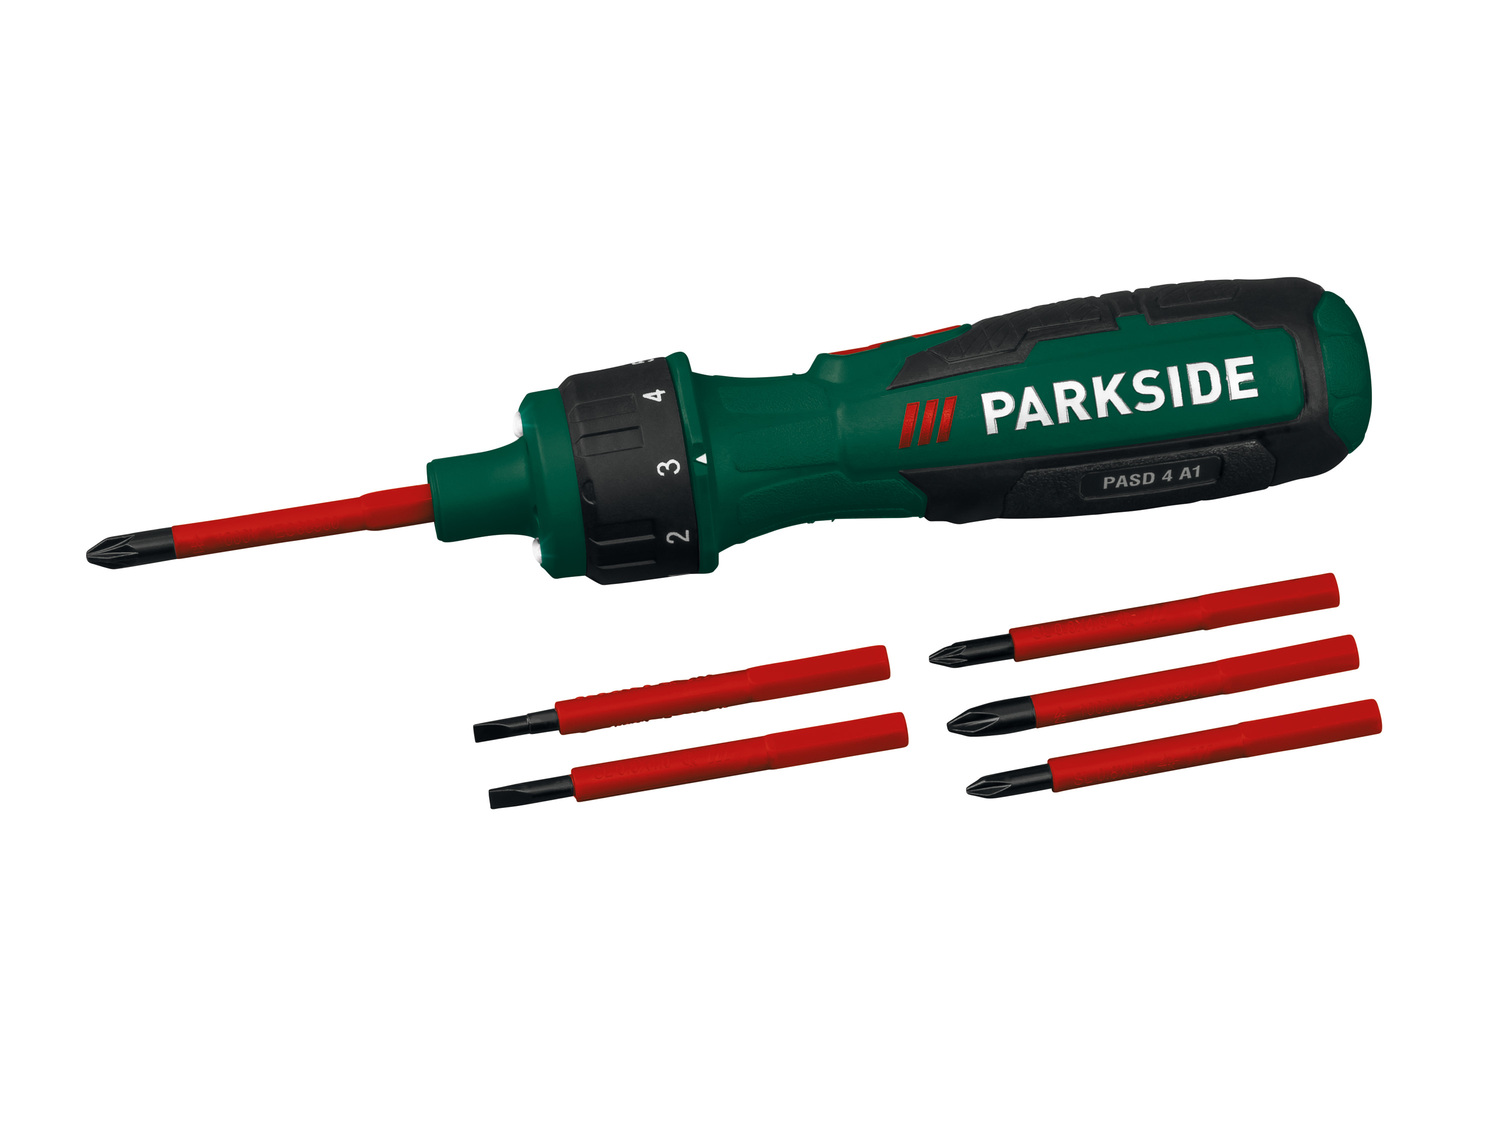 Akumulatorowy wkrętak 4 V z możliwością wyboru momentu obrotowego Parkside, ...